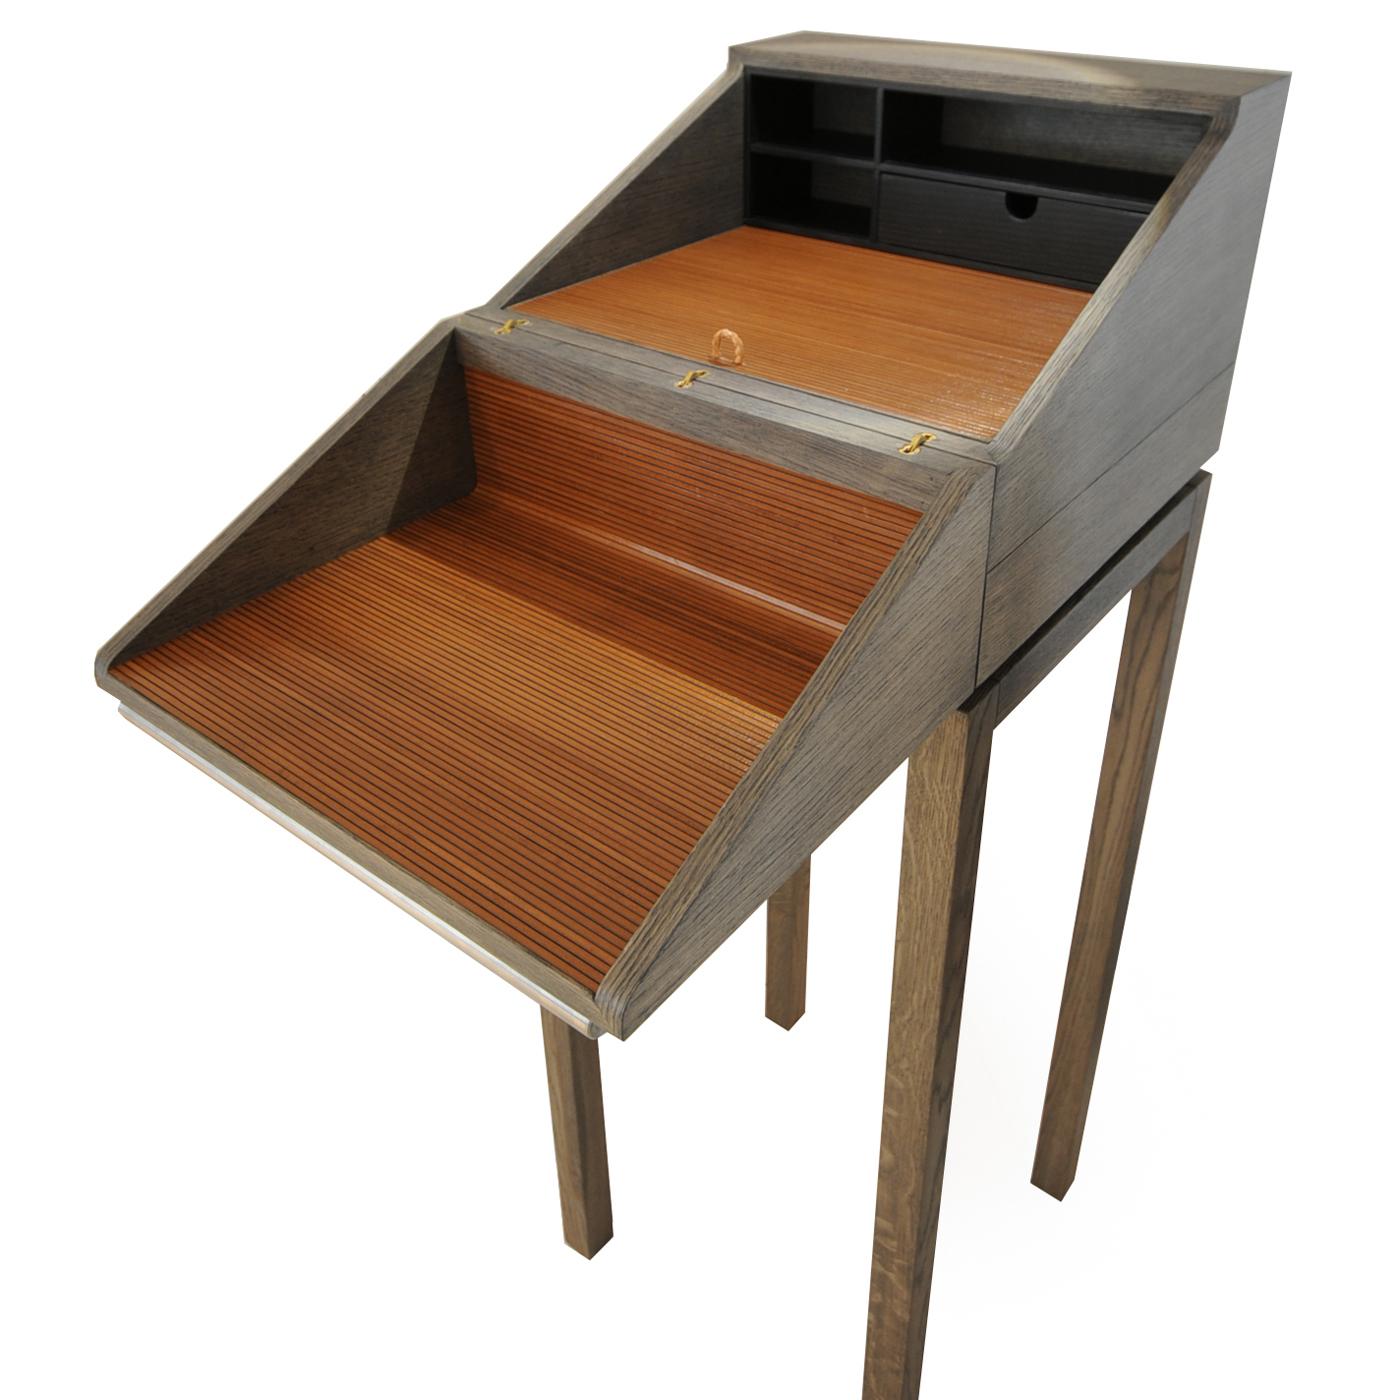 Dieser atemberaubende, klassisch inspirierte Schreibtisch ist ein zeitloses, funktionales Dekorationsstück, das jedes Interieur aufwertet. Die aus gebeiztem Eichenholz gefertigte Platte hat die Form eines stabilen Kastens, der verschlossen werden